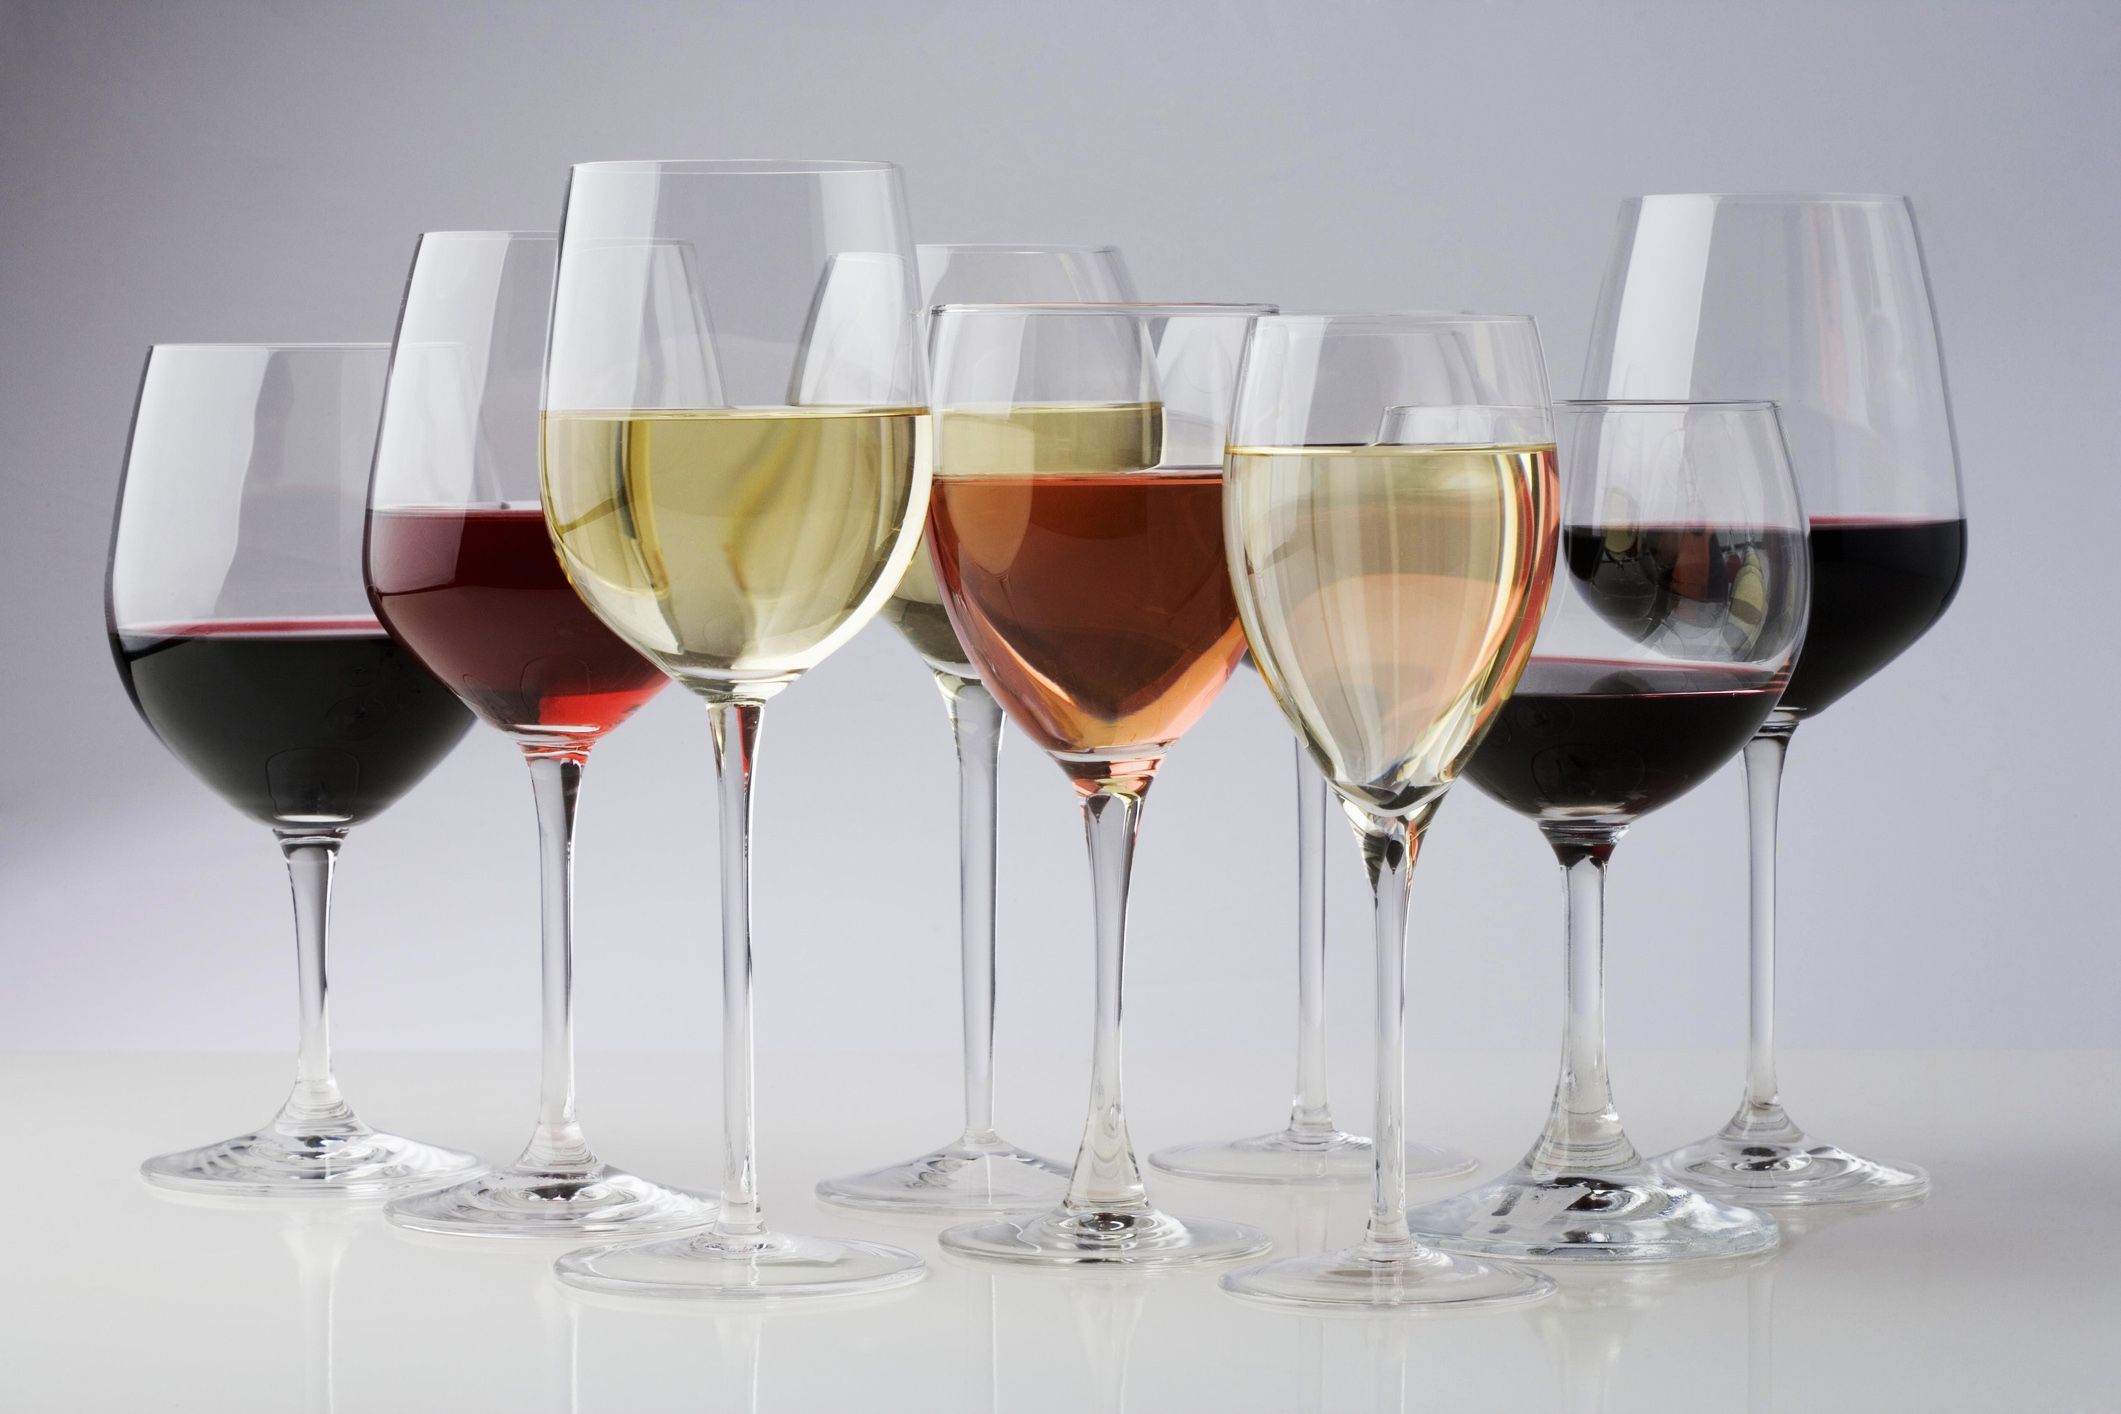 I bicchieri adatti ad ogni tipologia di vino